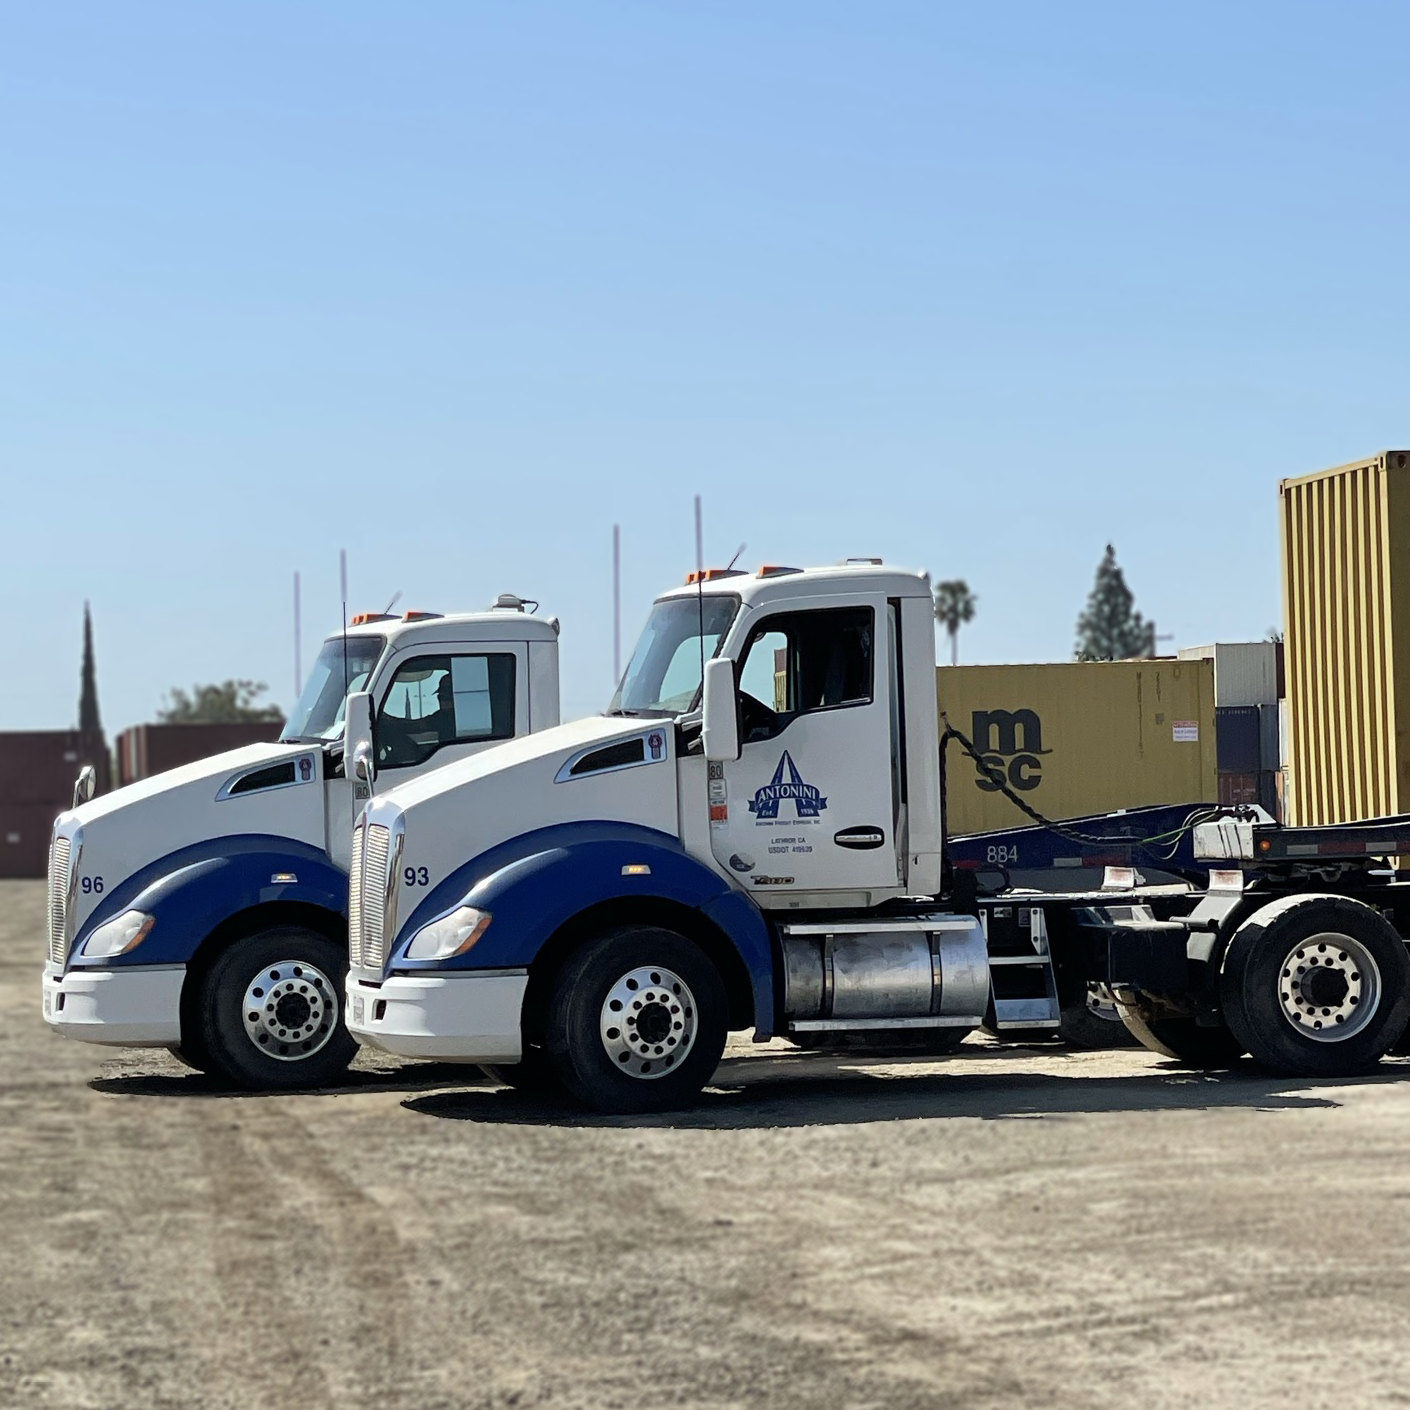 2 Antonini big rigs trucks in Stockton CA terminal